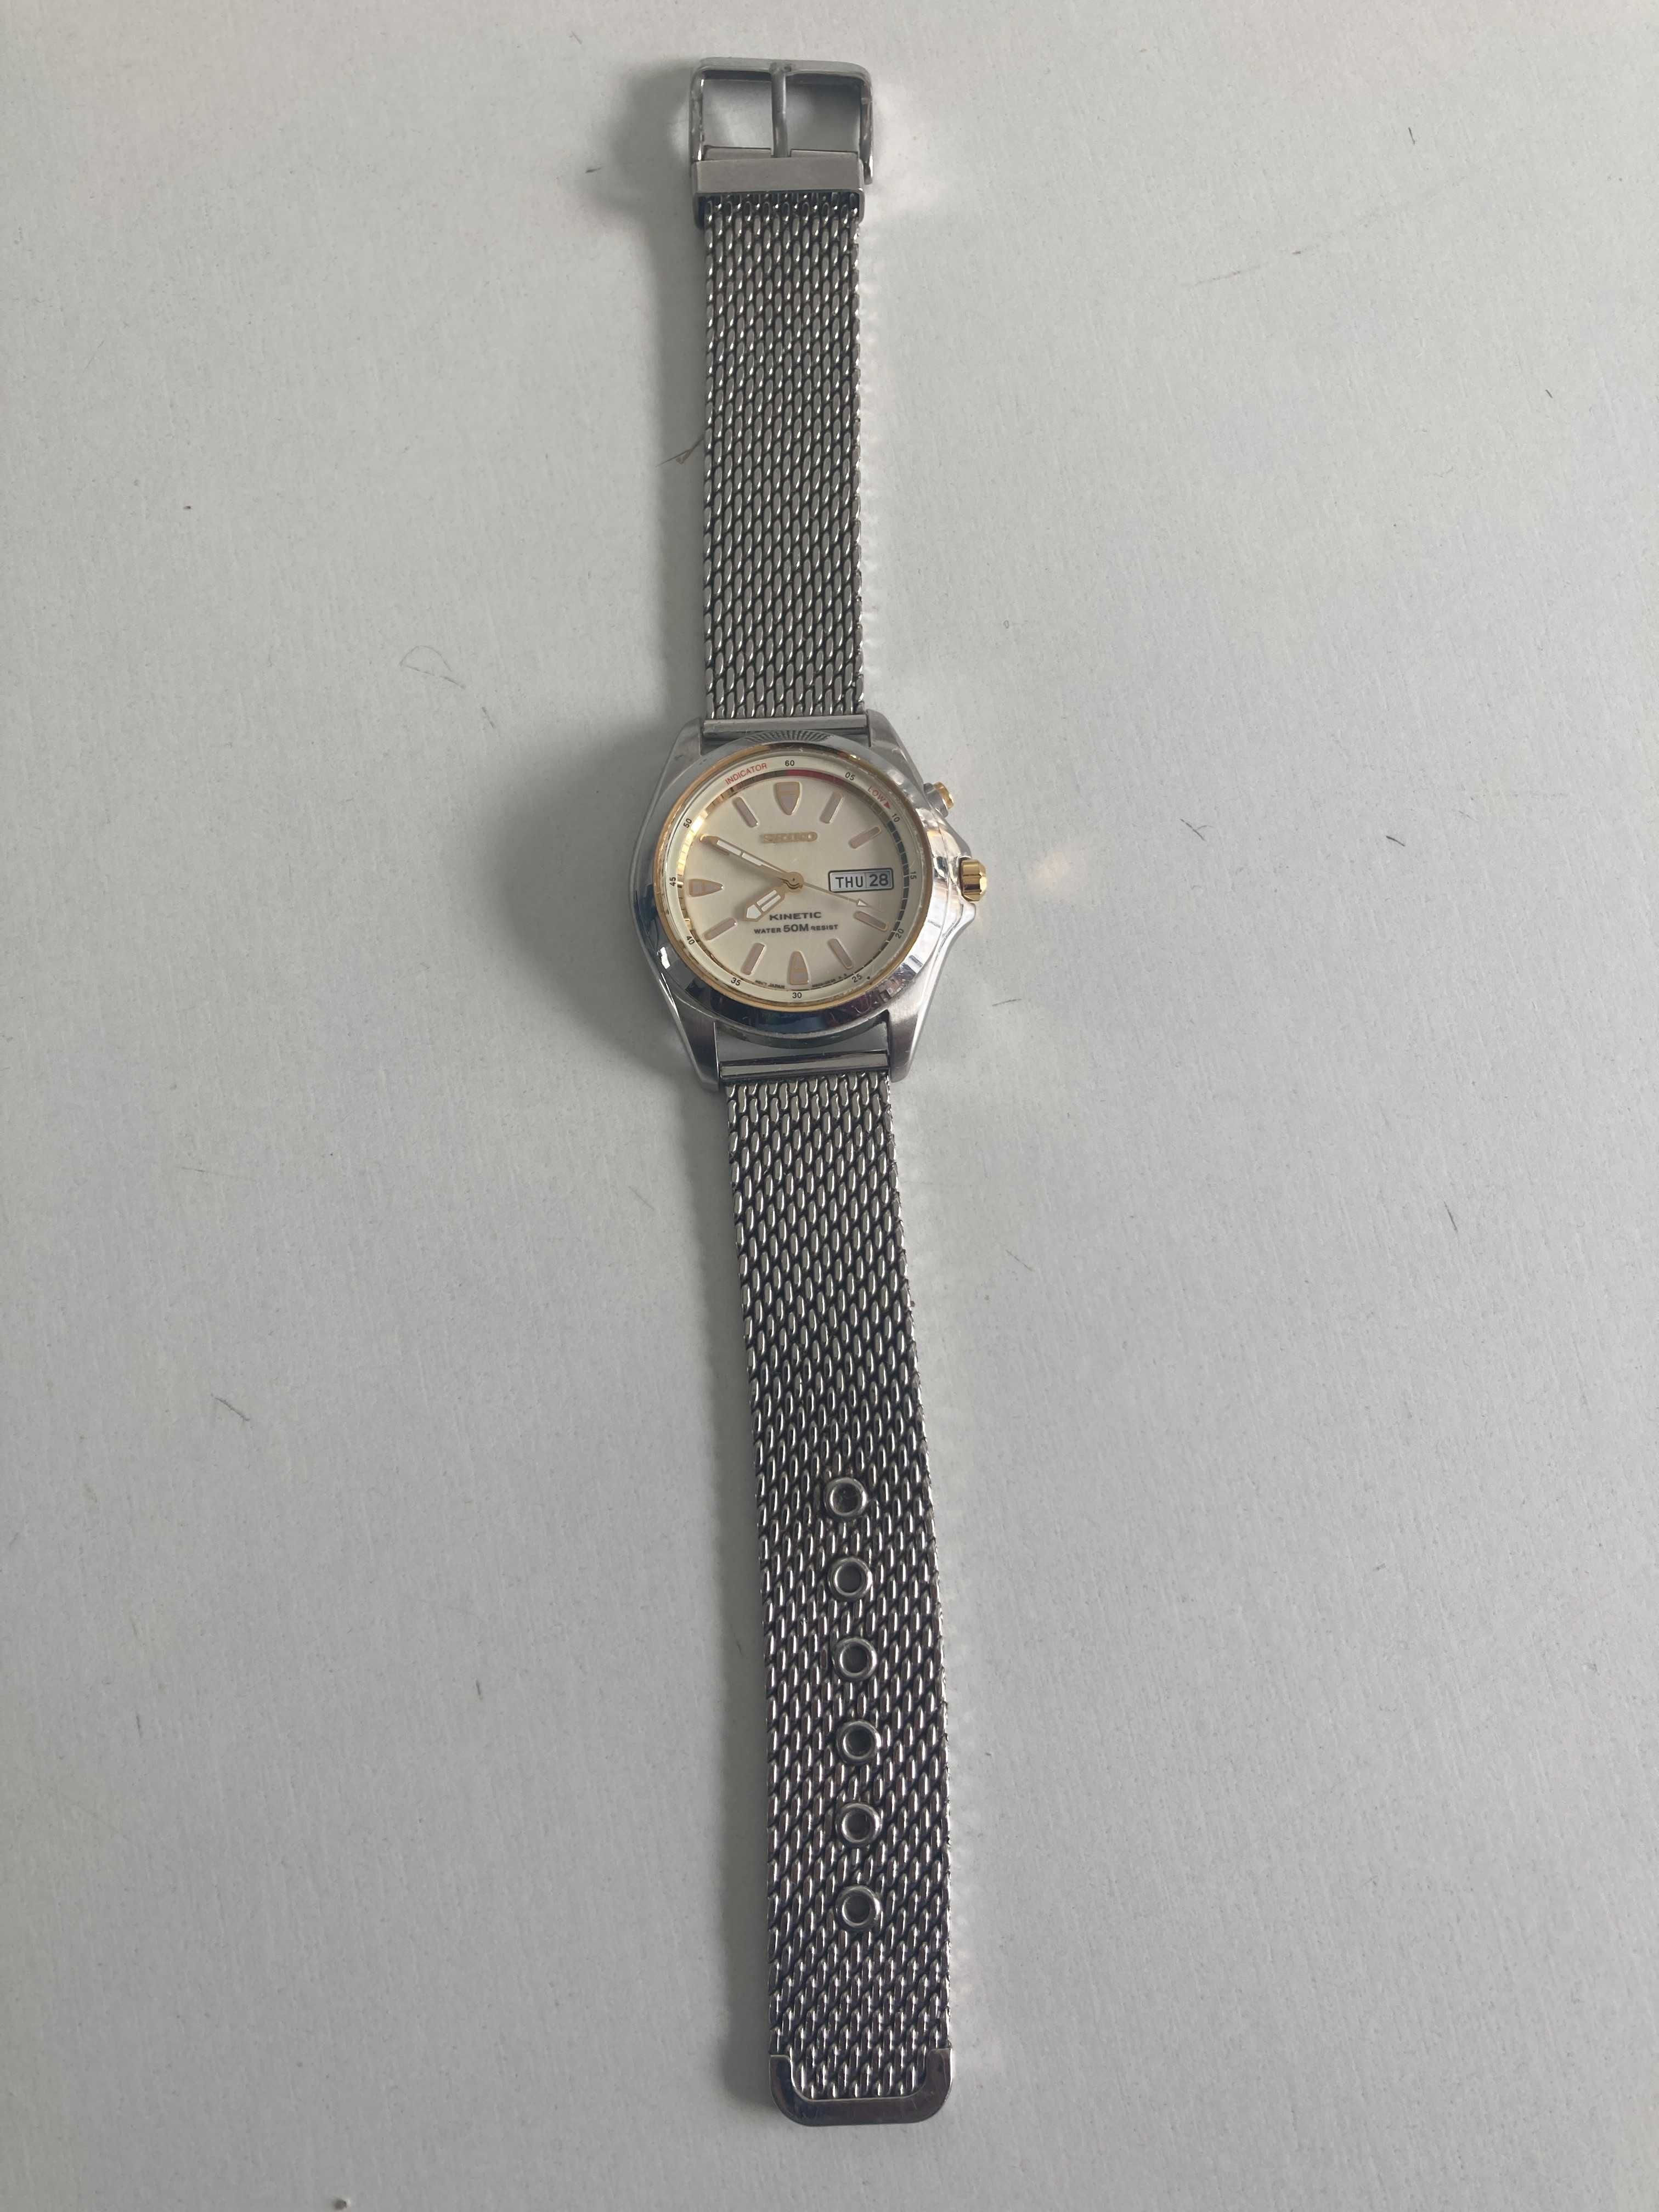 Relógio Seiko Kinetic 5M43-OC80 com pulseira de aço Original usado